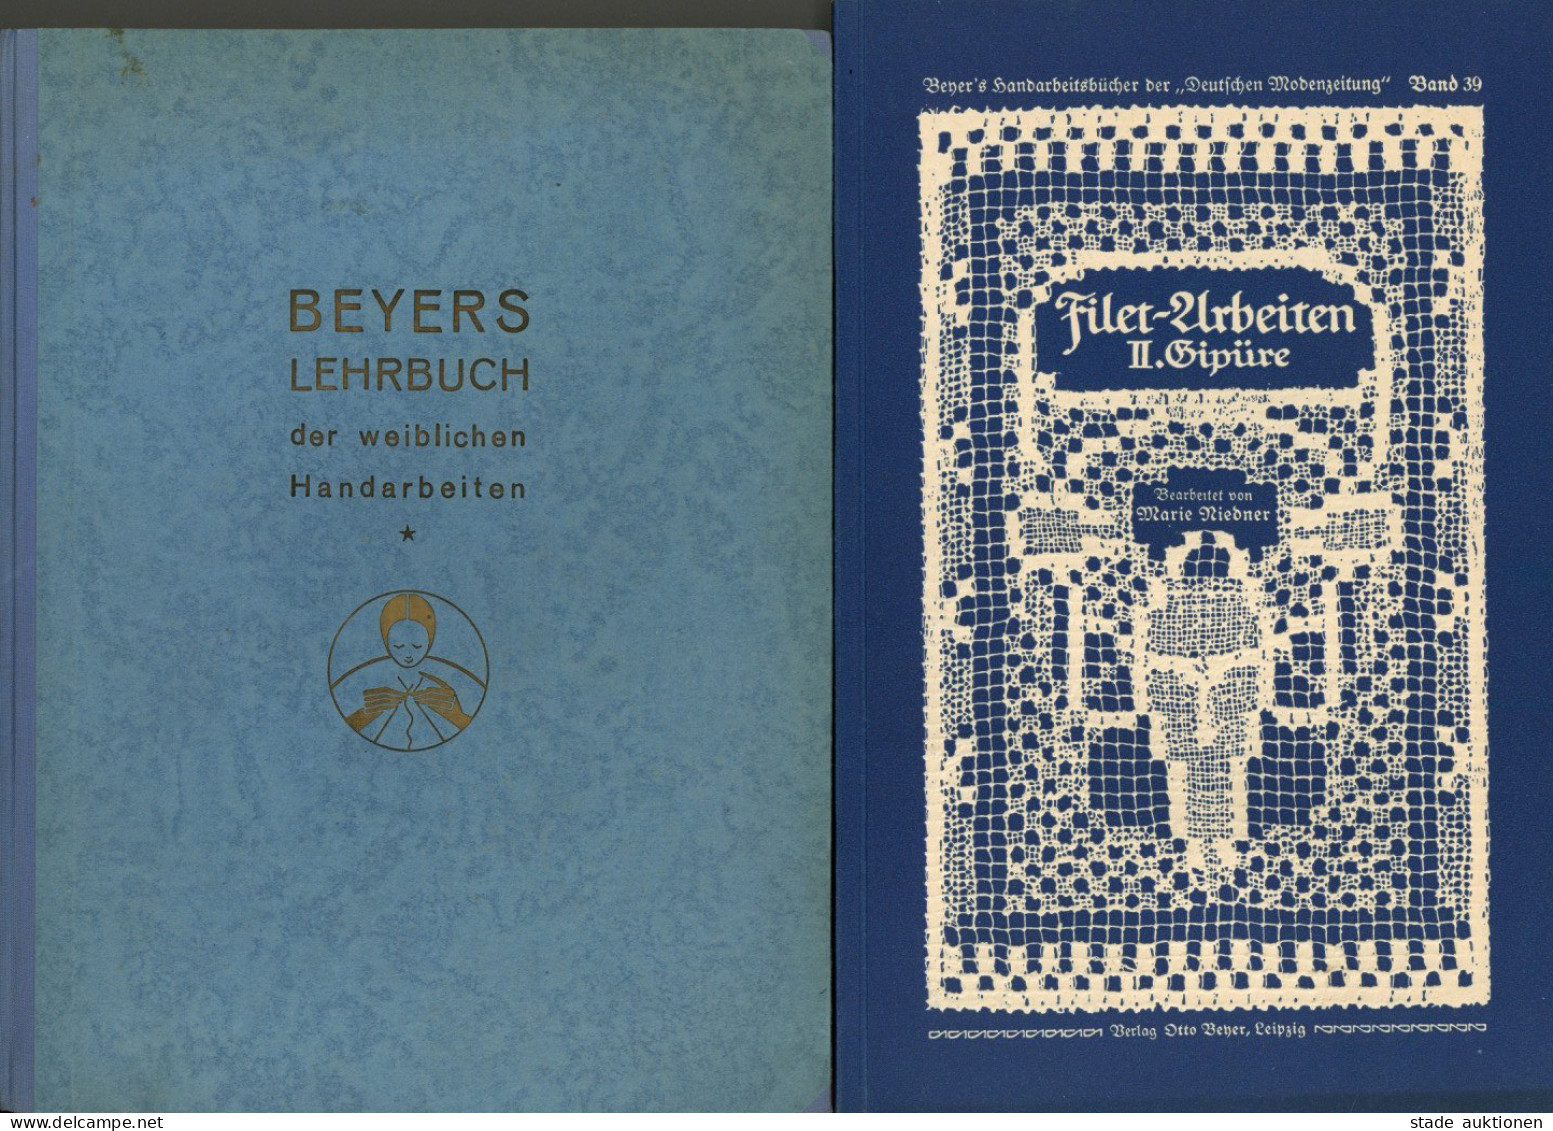 2 Bücher Beyers Lehrbuch Der Weiblichen Handarbeit 1939 Und Filet-Arbeiten II. Gipüre 1915, Verlag Beyer Leipzig, über 3 - Köhler, Mela